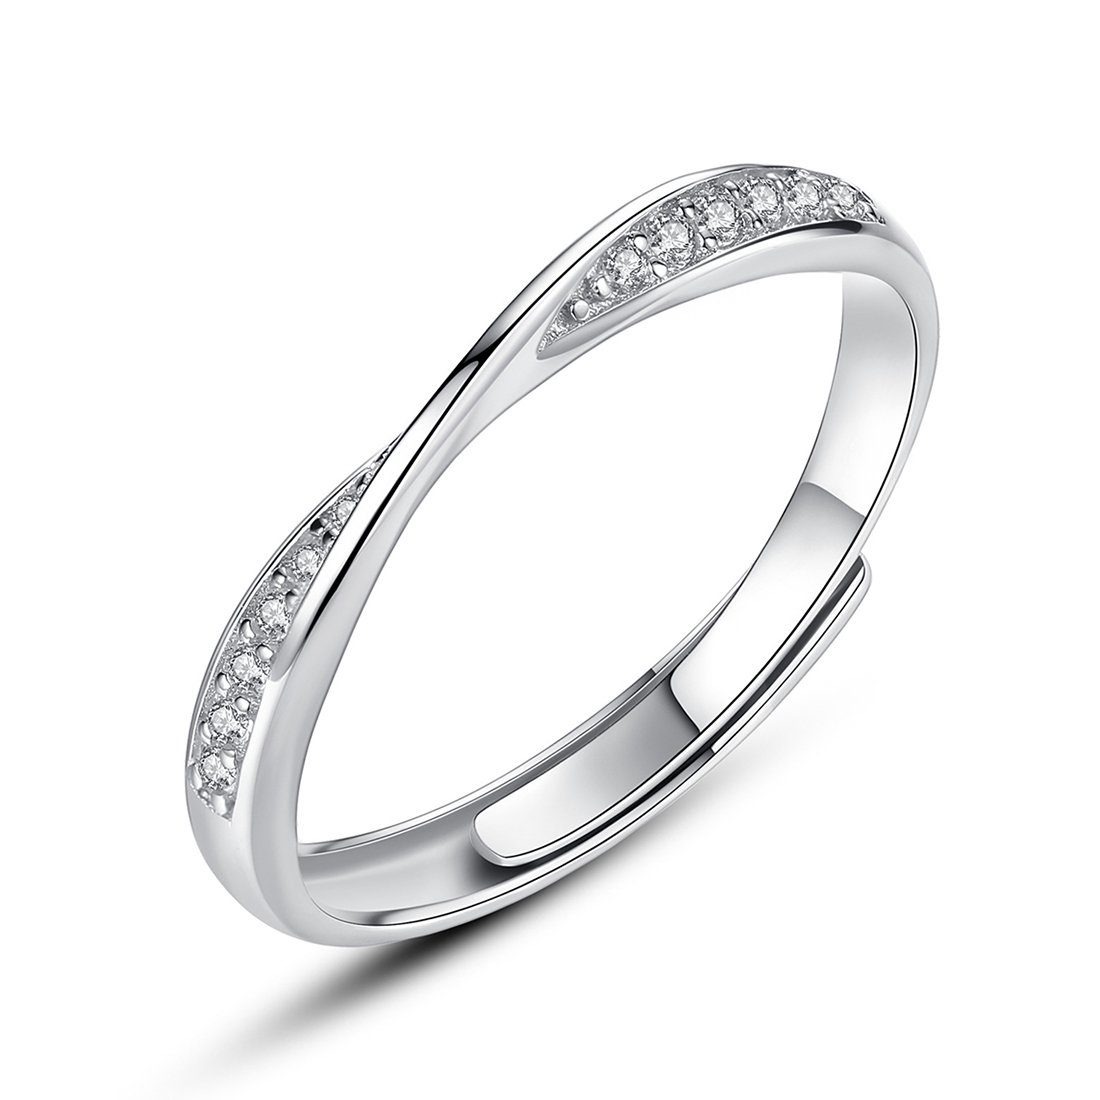 Haiaveng Fingerring 925 Silber Poliert Damen Ring Zirkonia Herren Verstellbarer